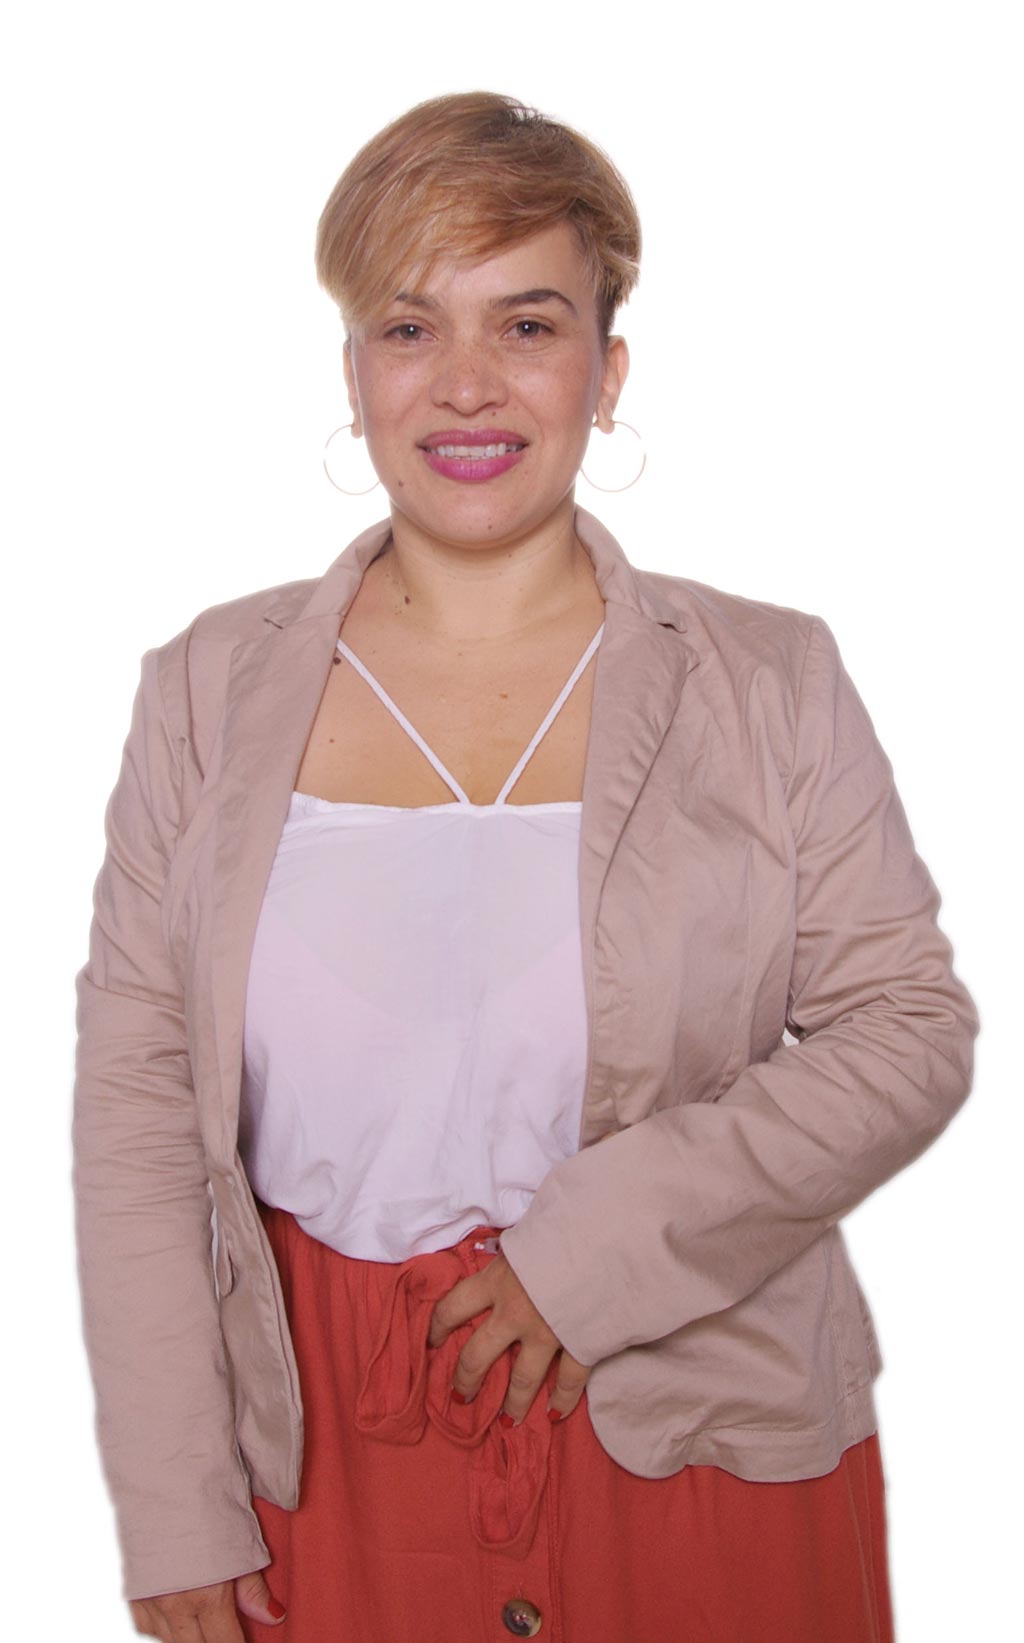 Gerente de Diversidades Sexuales e Identidades - Género Olga Patricia Llano Obando